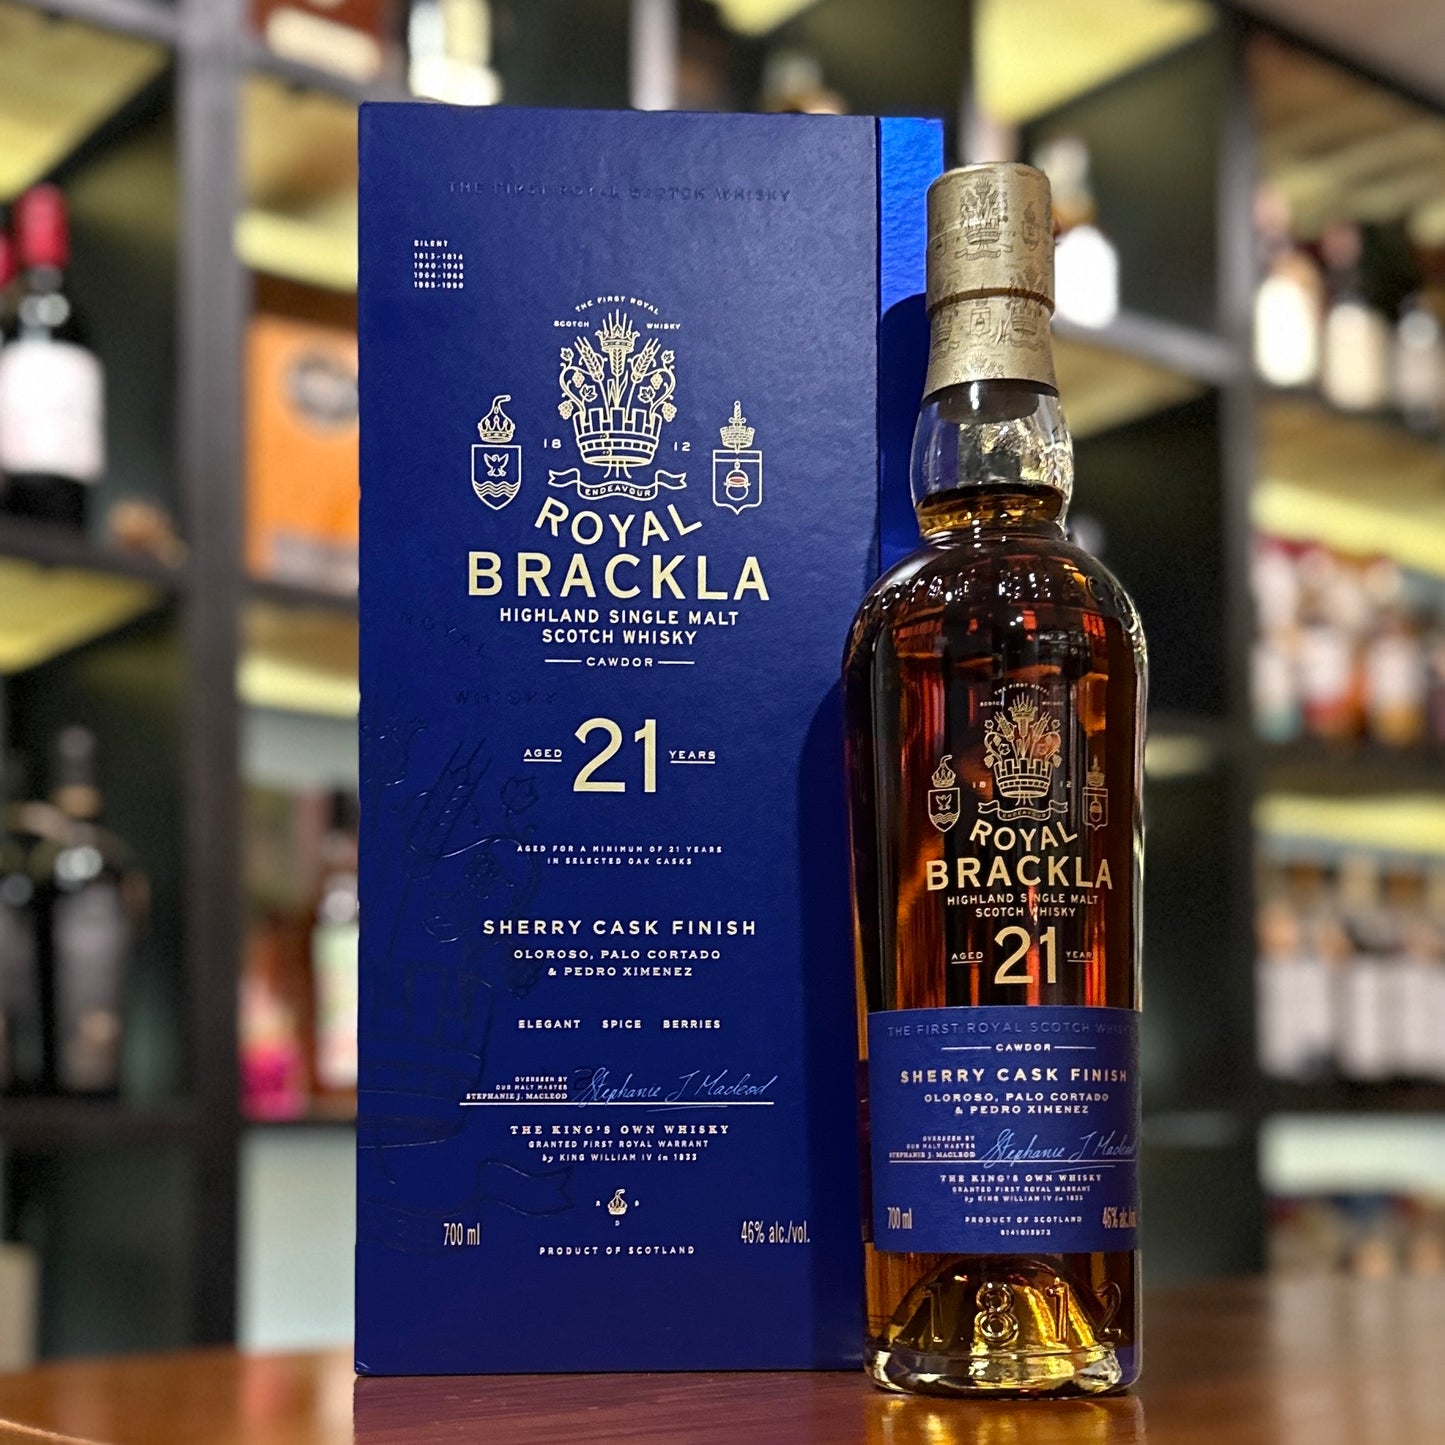 Royal Brackla 21 Year Old Single Malt Scotch Whisky